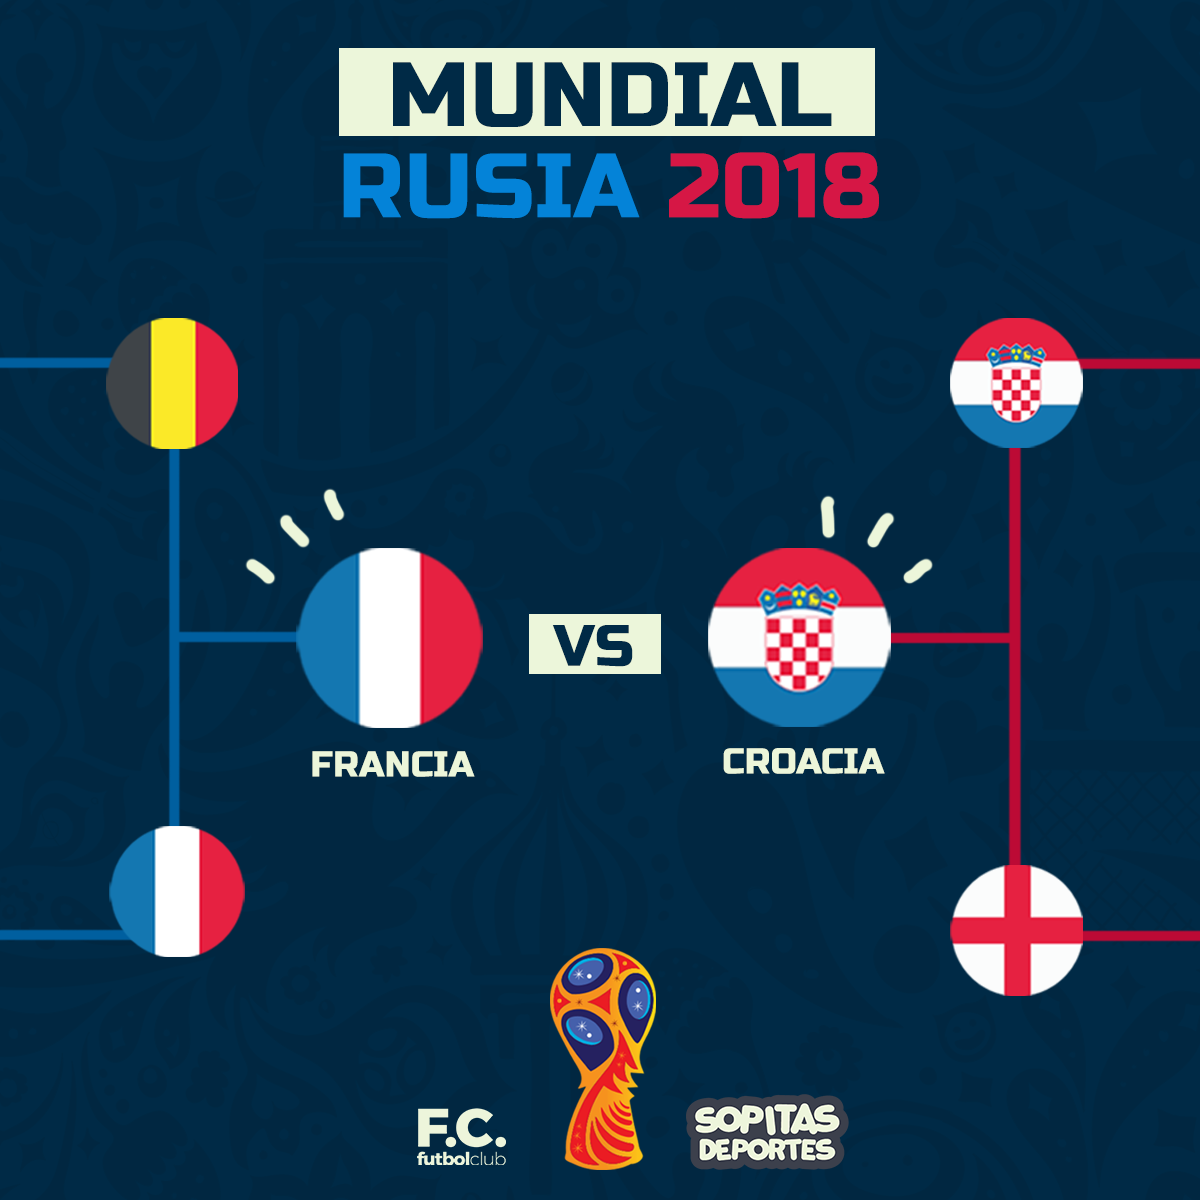 Esta fue la última vez que Francia y Croacia se enfrentaron en un Mundial